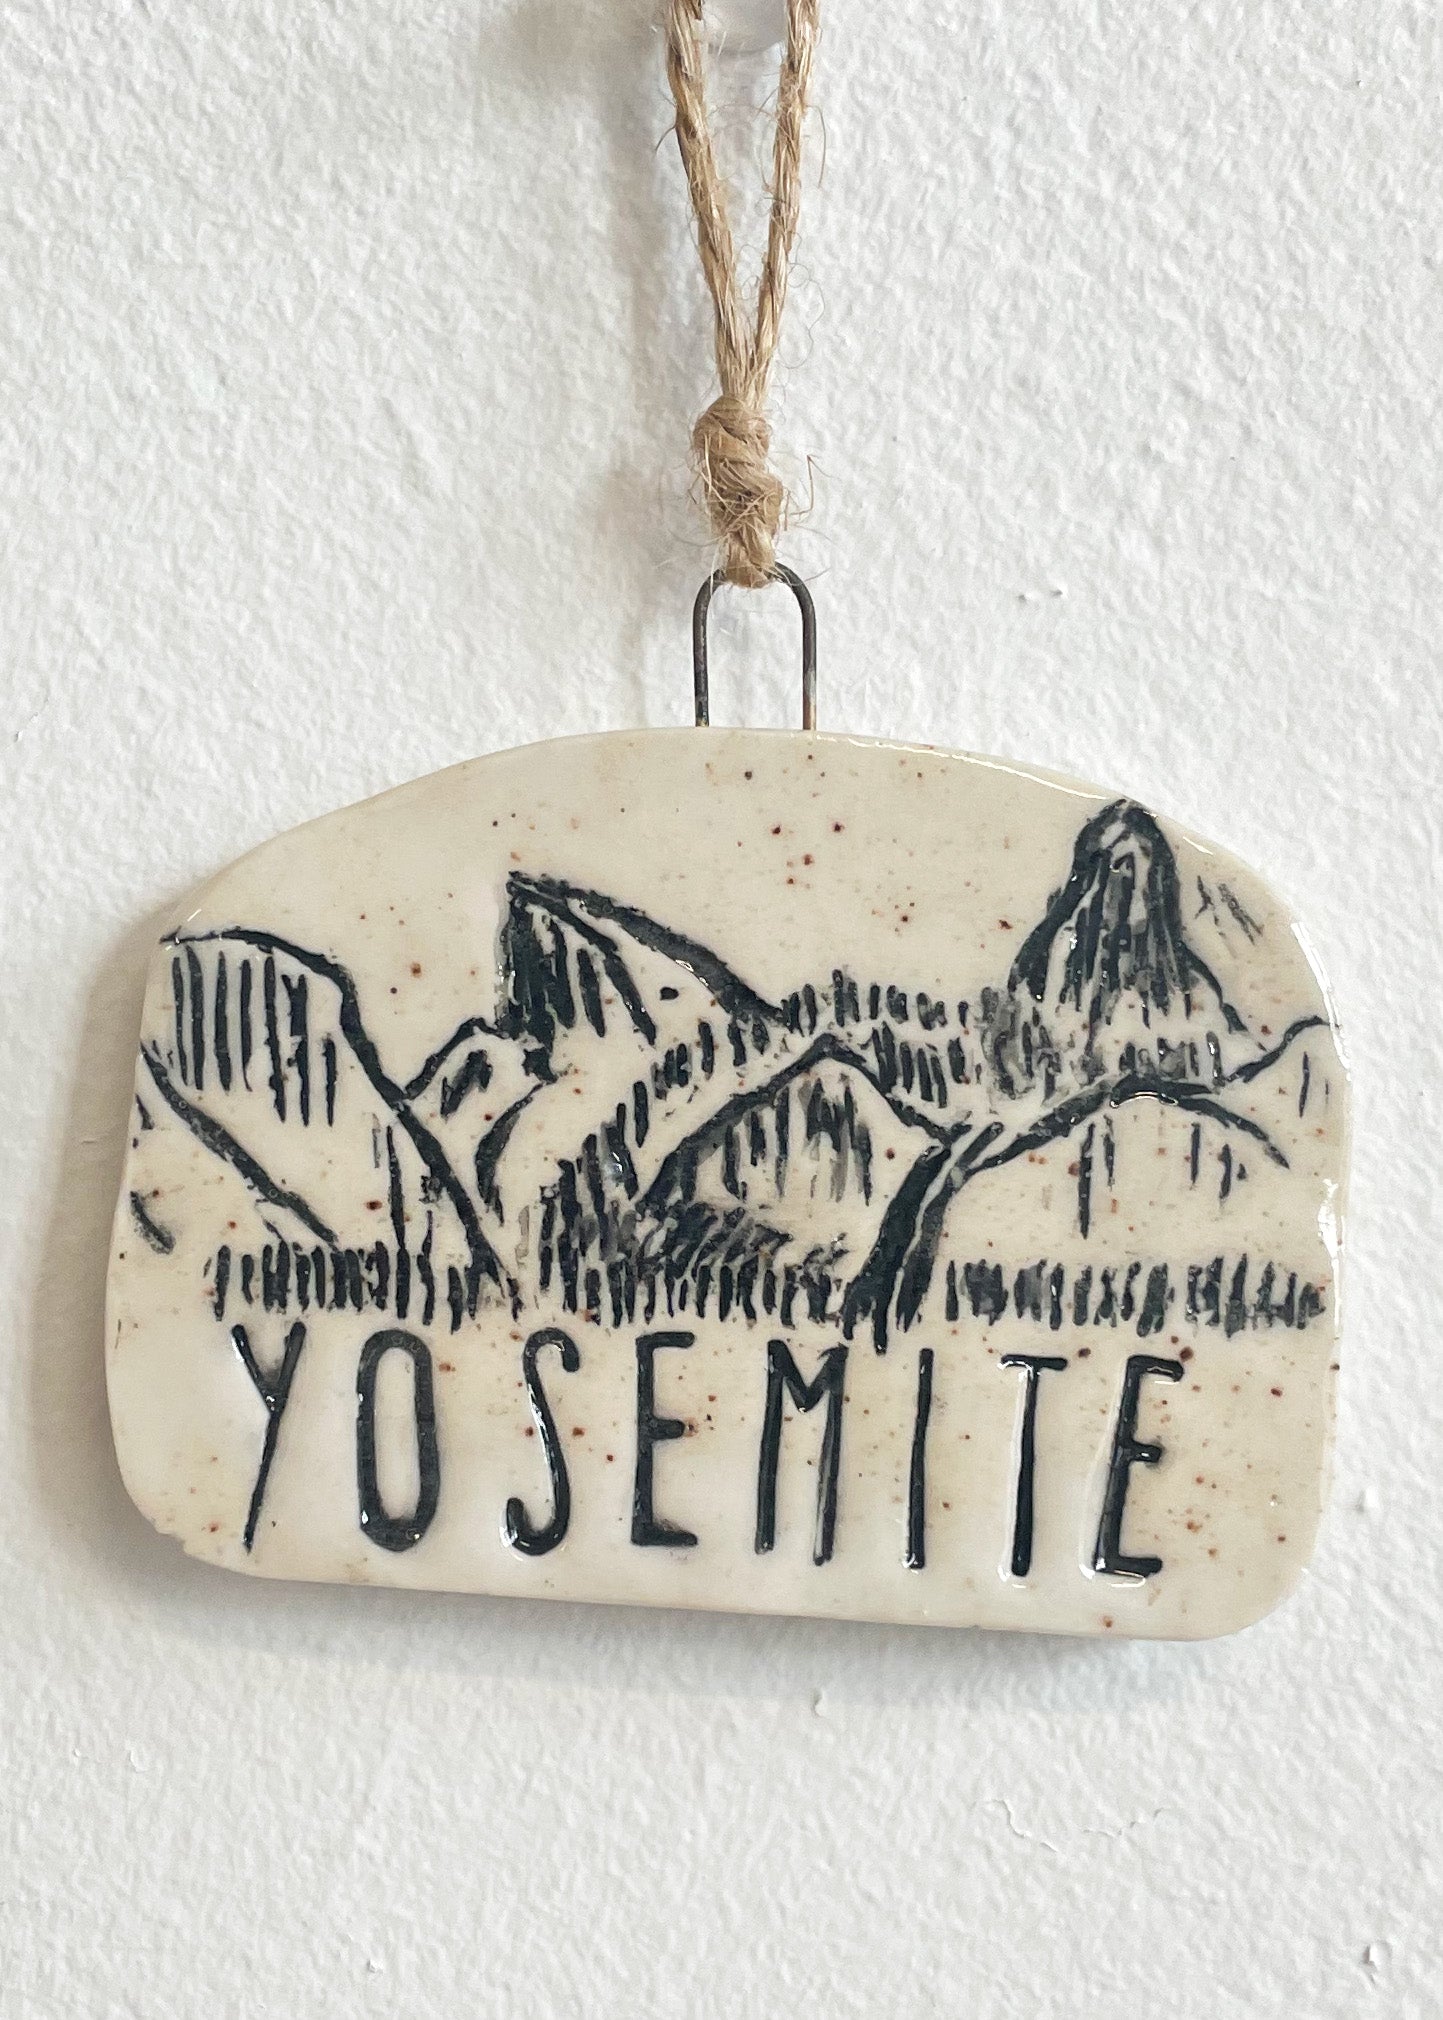 Yosemite Tunnel View Ornament, No 7